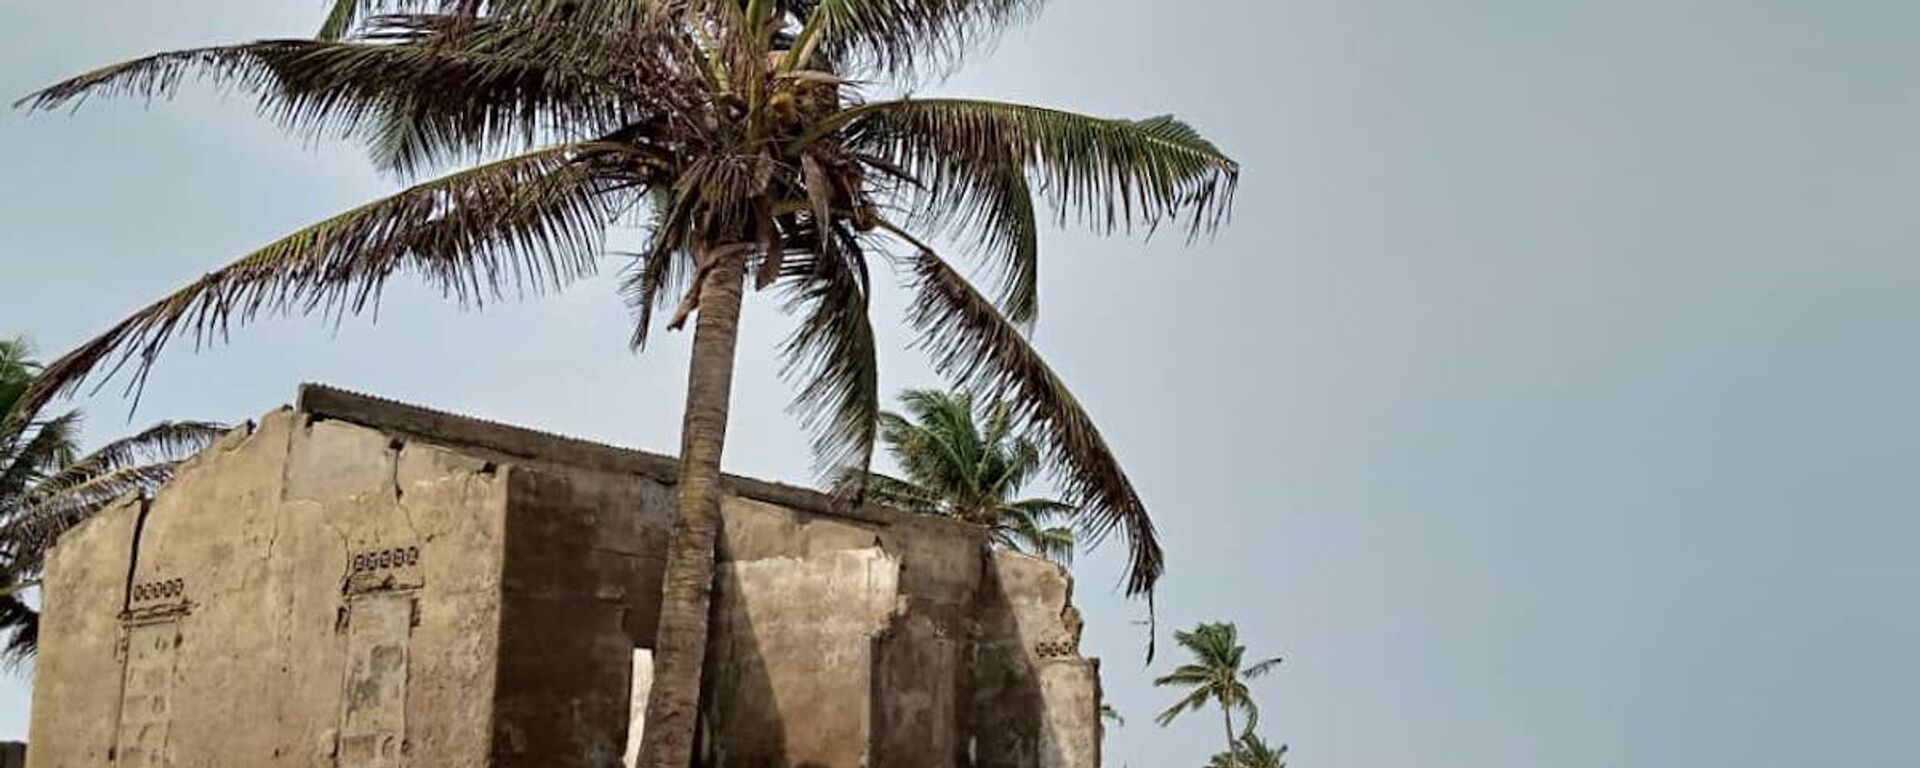 Restes de maisons abandonnées sur la côte togolaise à cause de l’érosion au village de Kossi Agbavi au Togo. - Sputnik Afrique, 1920, 30.07.2020